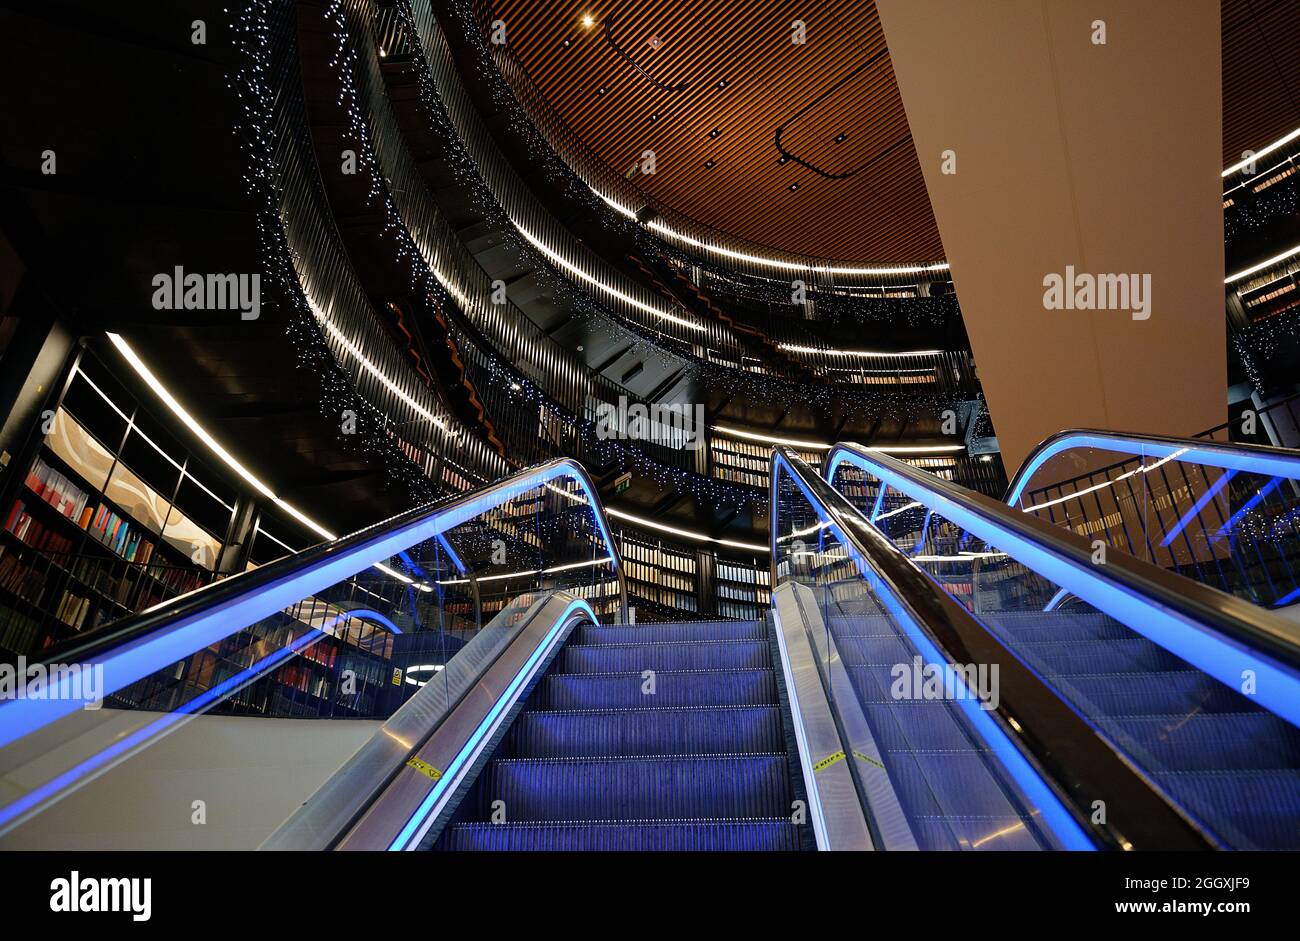 Bibliothek von Birmingham, im Zentrum der Stadt West Midlands. Gebogenes Atrium und blau beleuchtete Rolltreppen und funkelndes Licht. Stockfoto